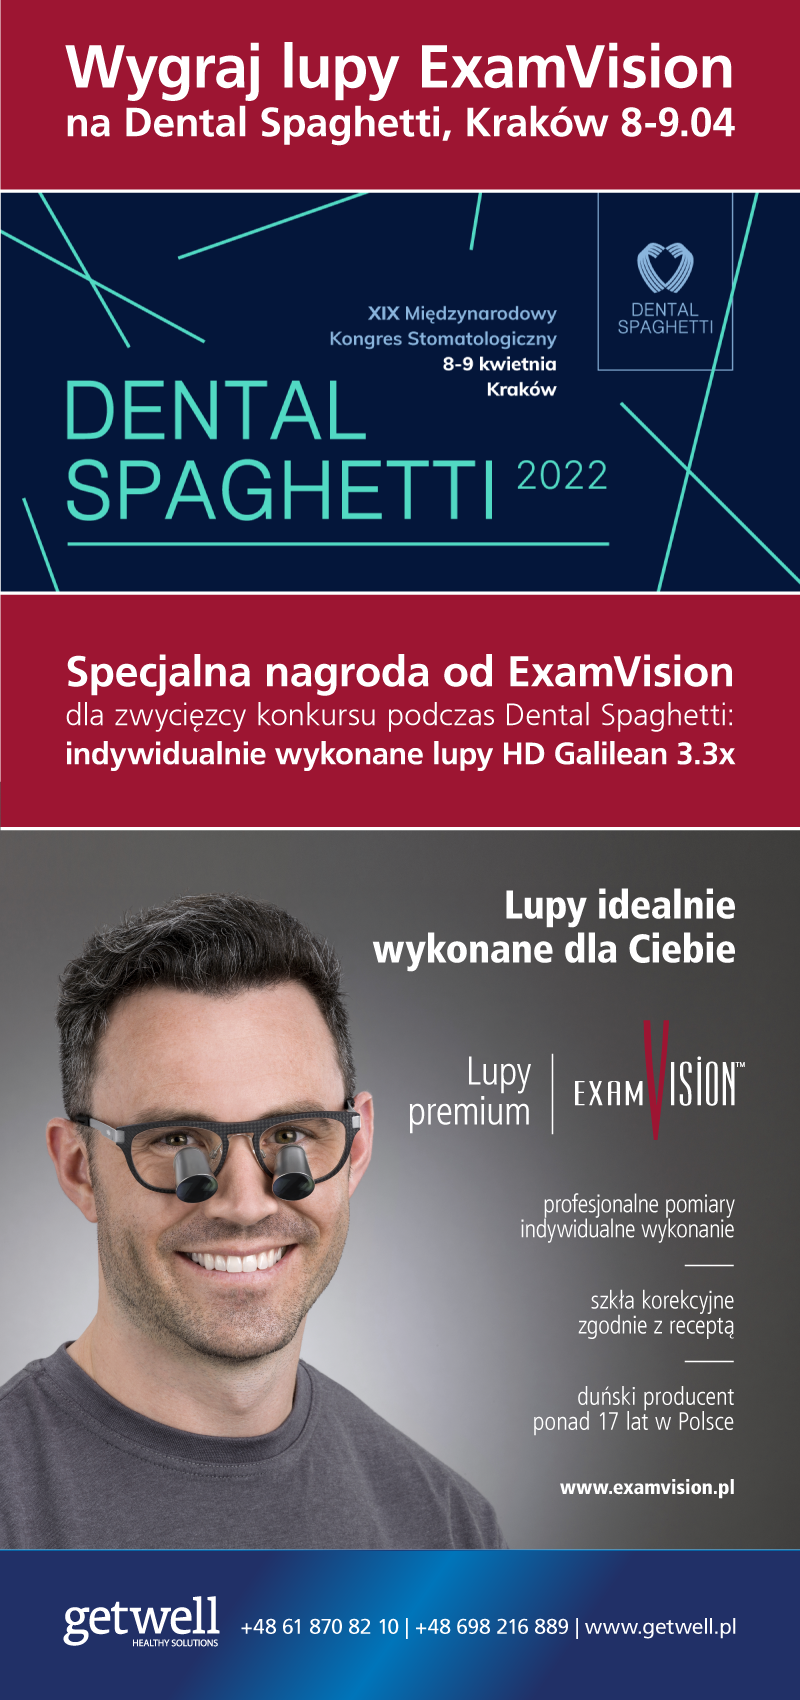 Wygraj lupy ExamVision na Dental Spaghetti 2022